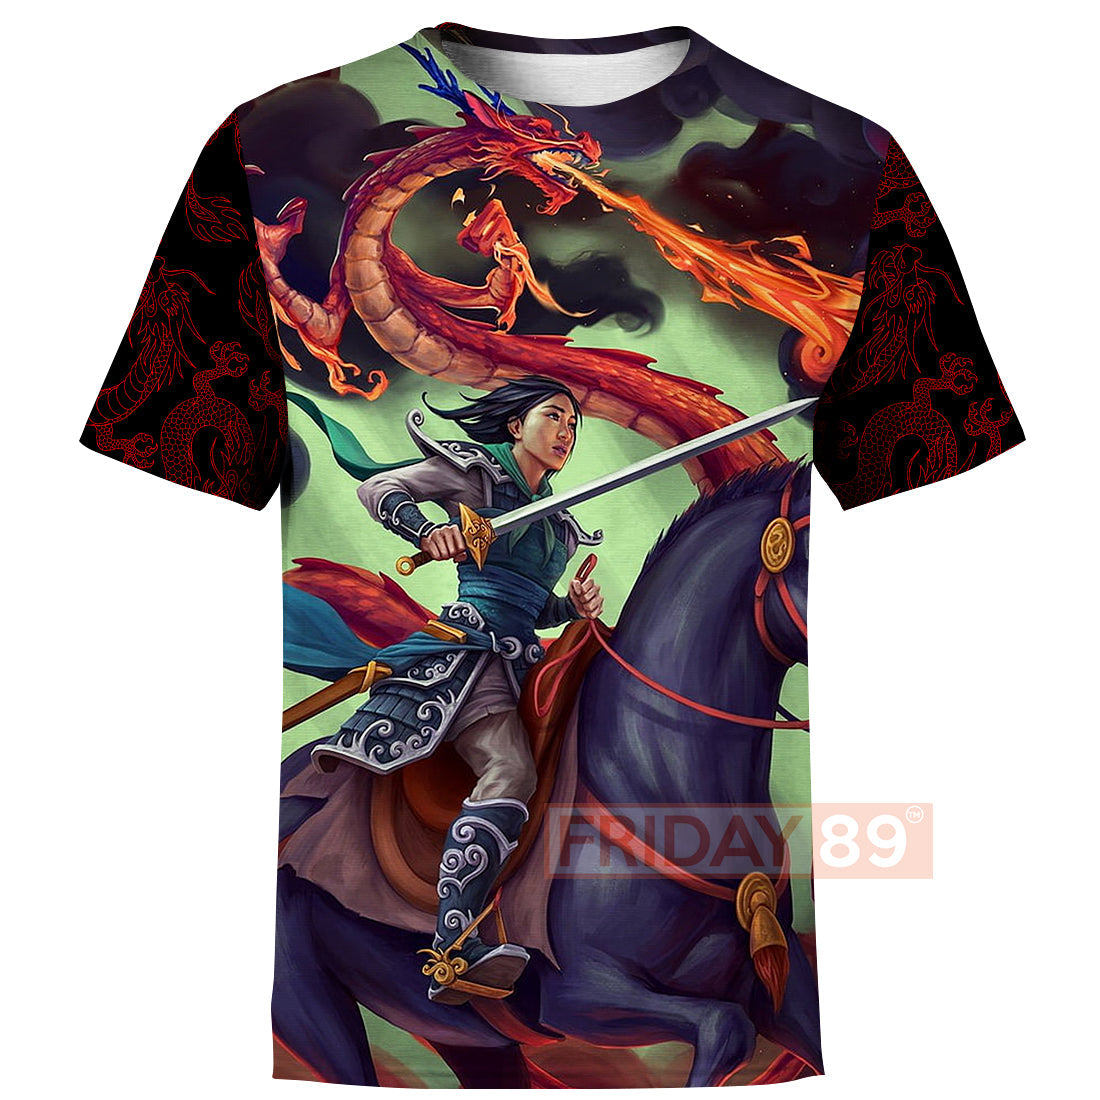 Unifinz DN T-shirt Princess Mulan Warrior Art 3D Print T-shirt Awesome DN Mulan Hoodie Sweater Tank 2025